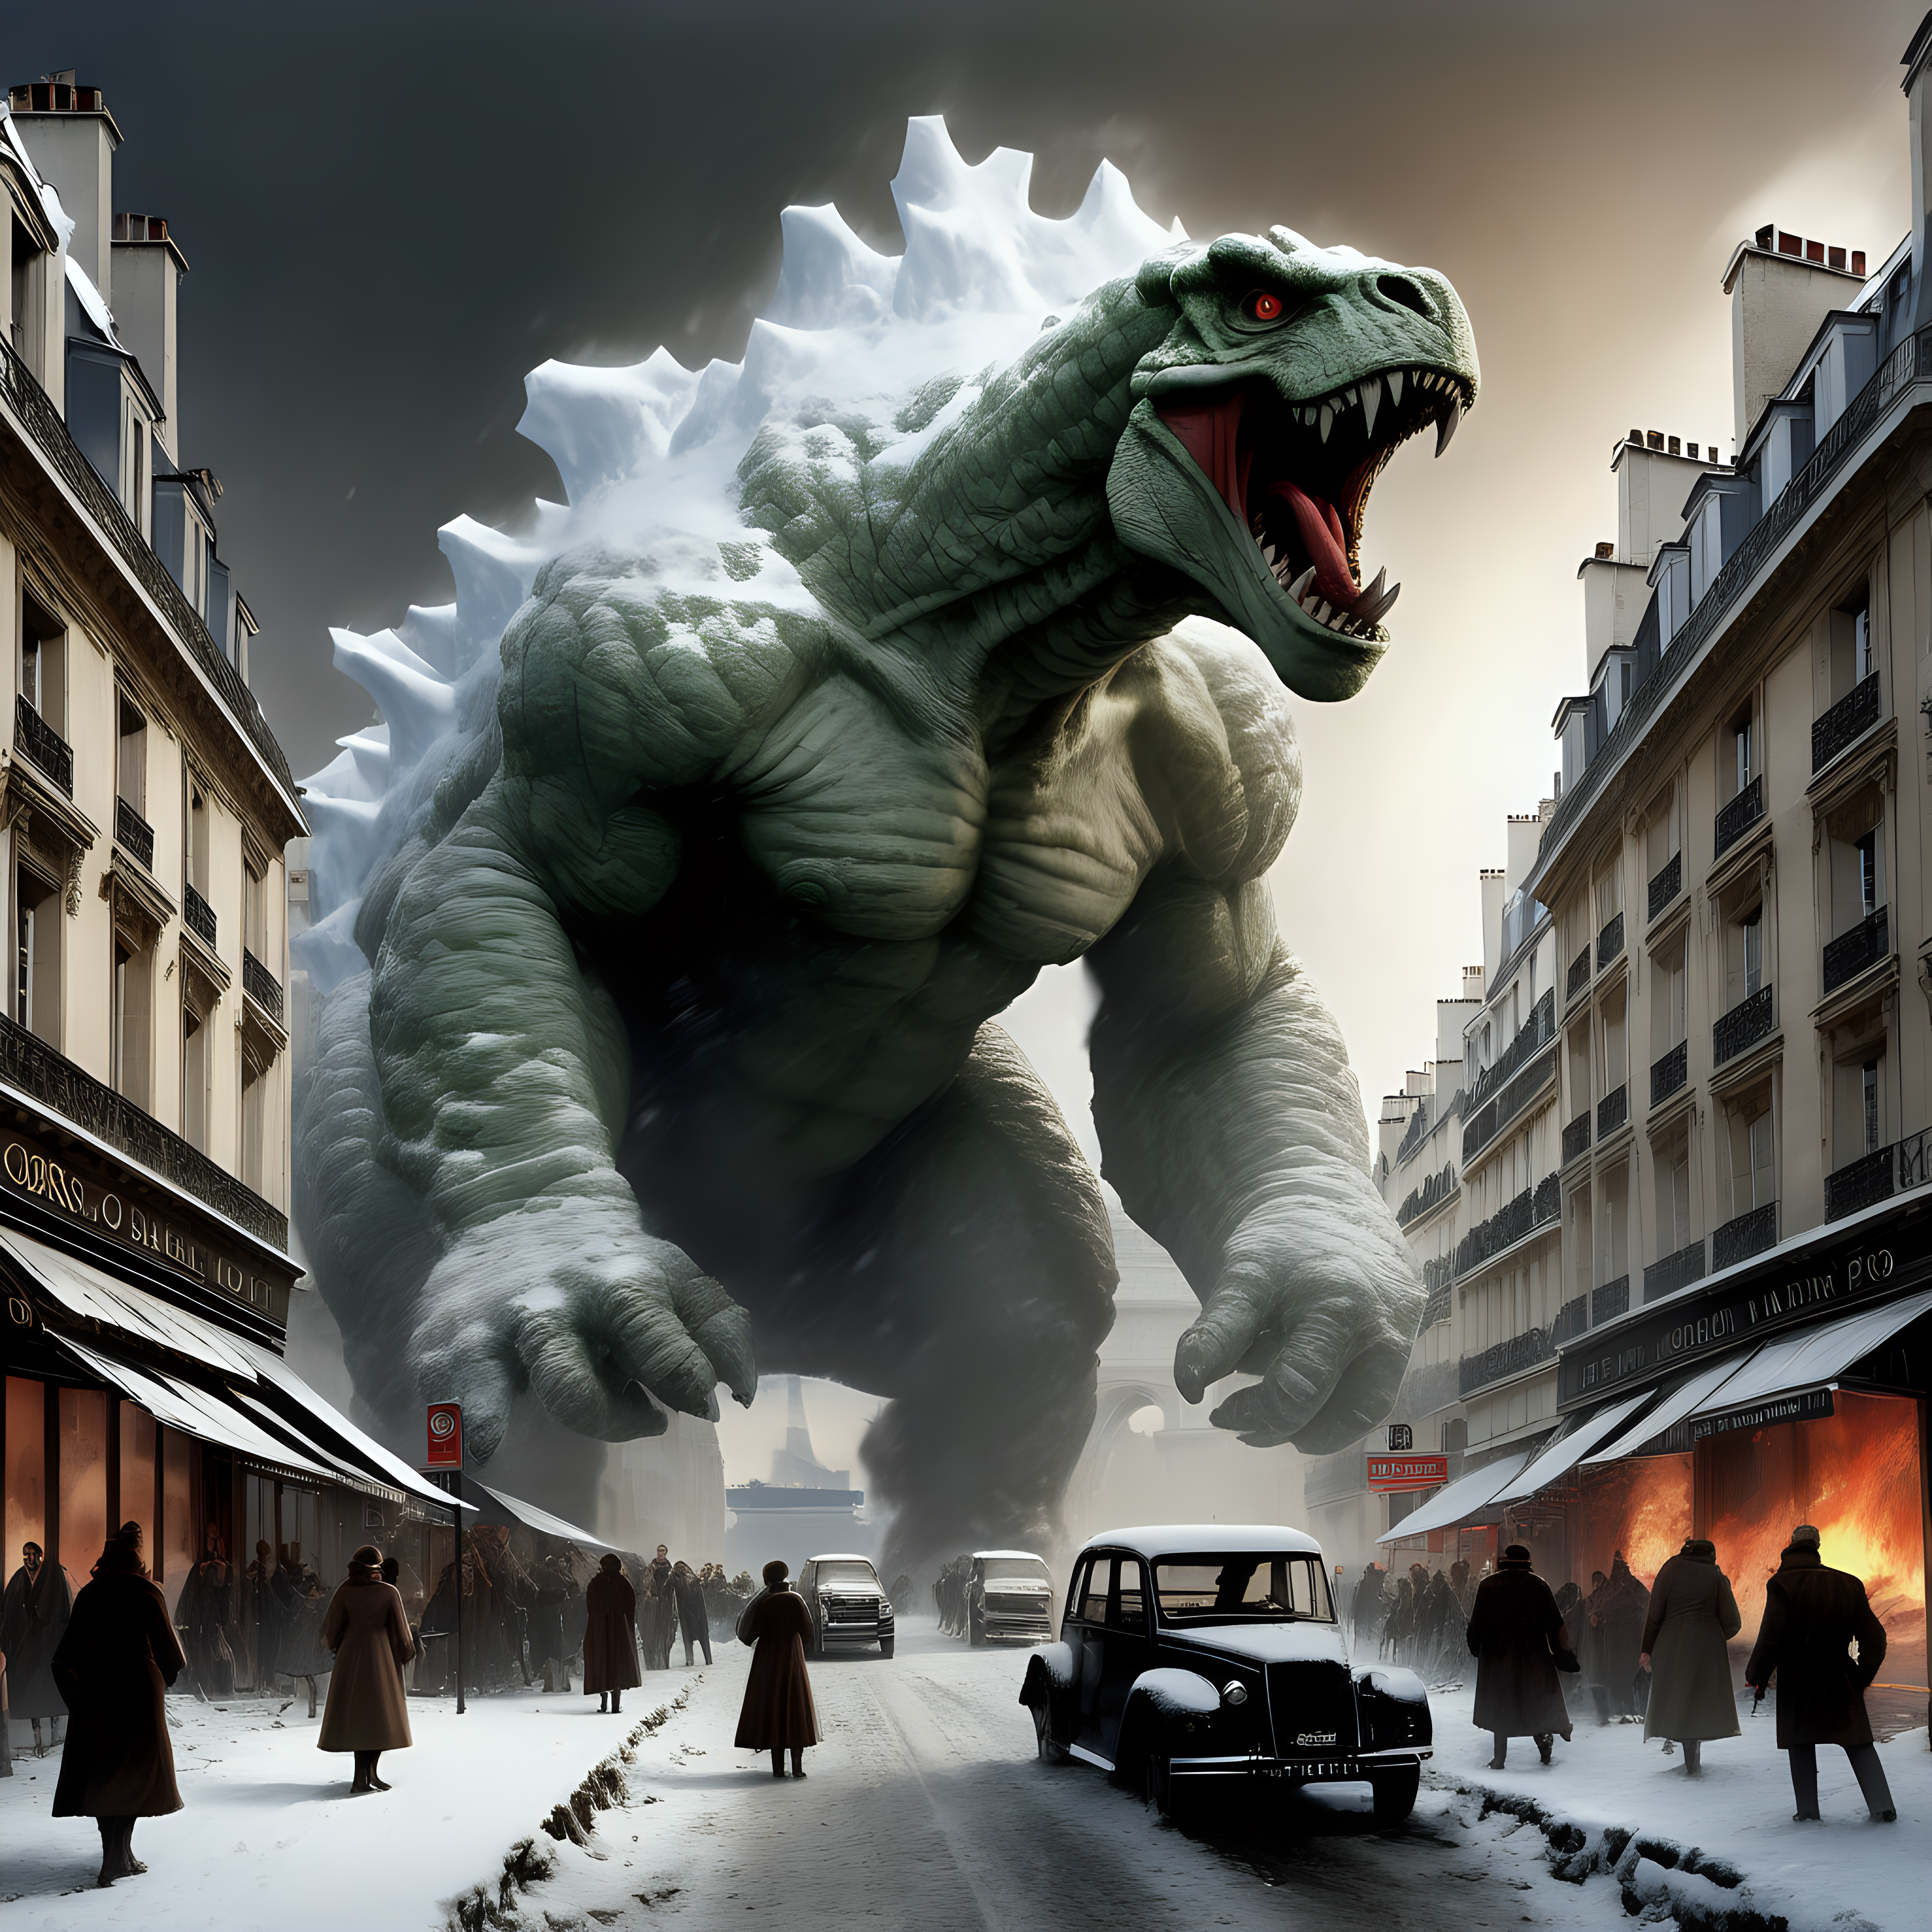 Gorgo destroying Paris in winter